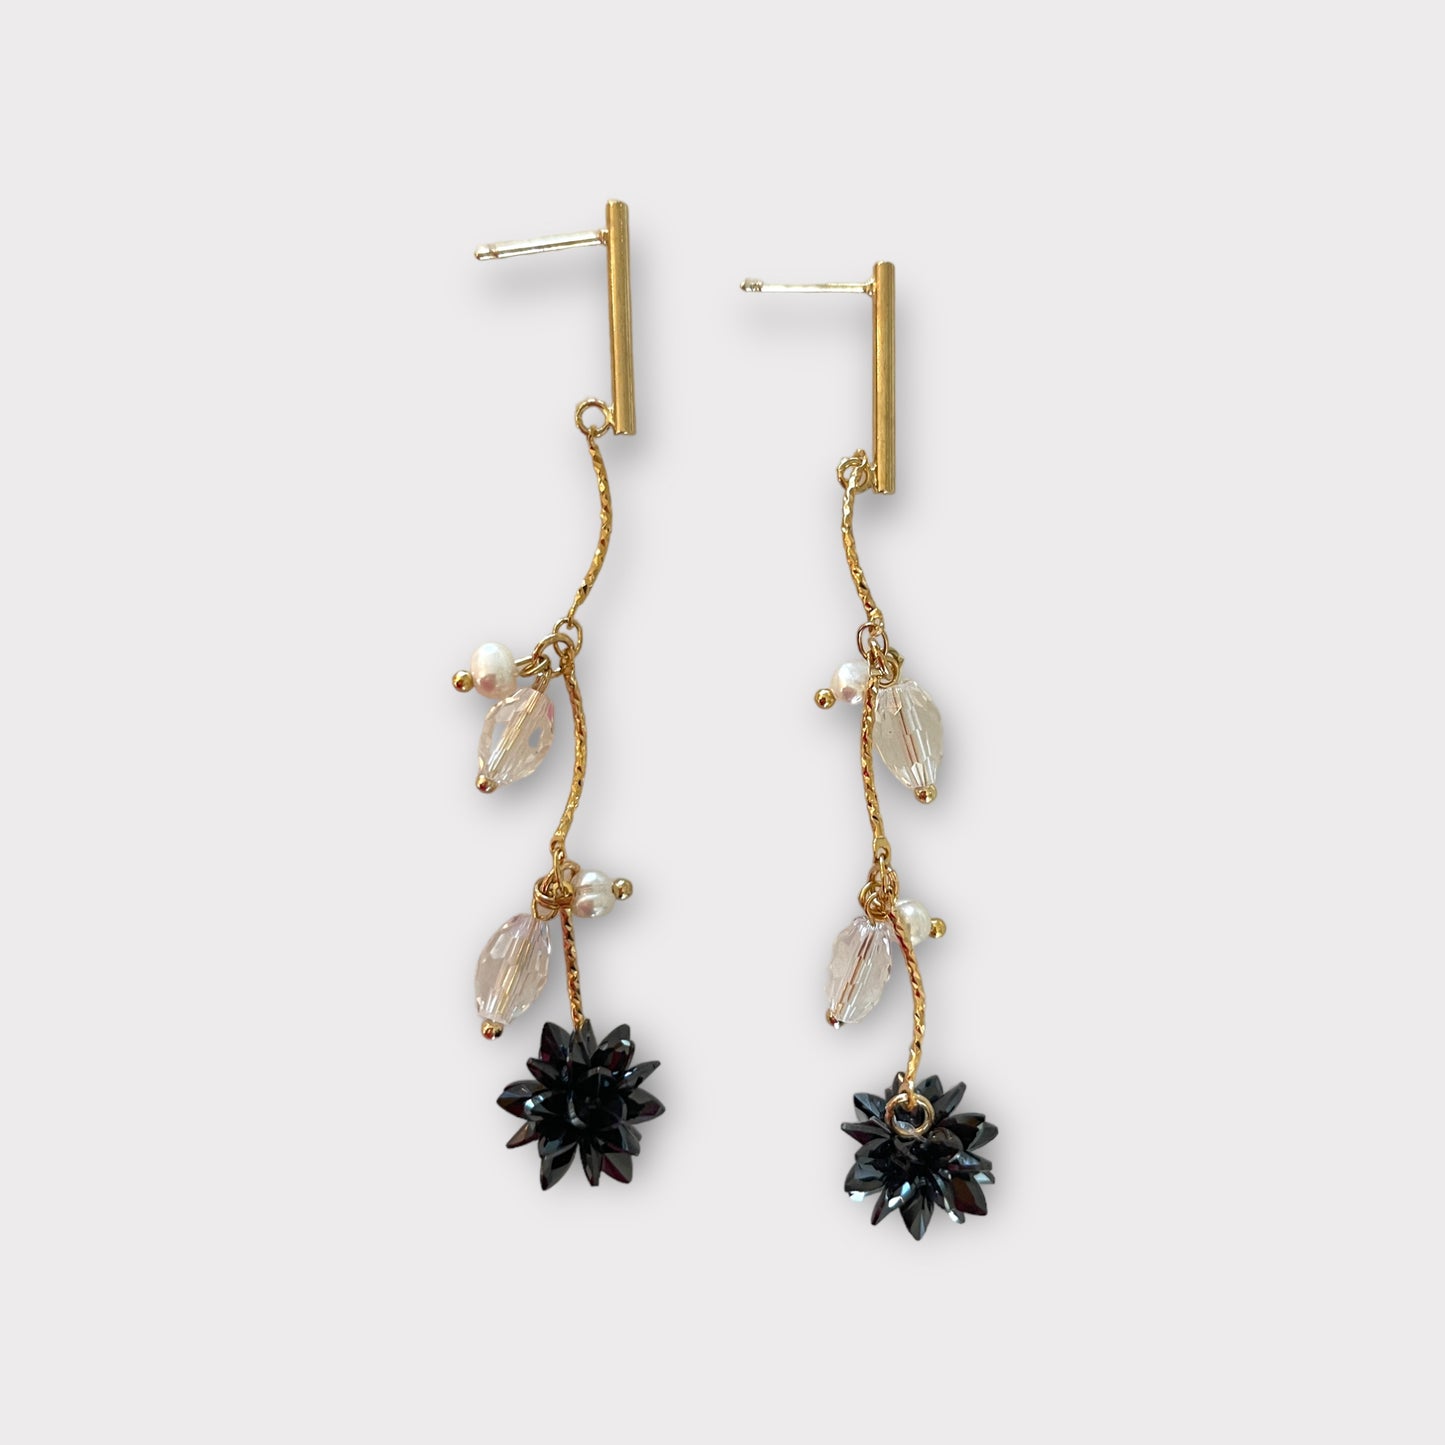 Black branch earrings